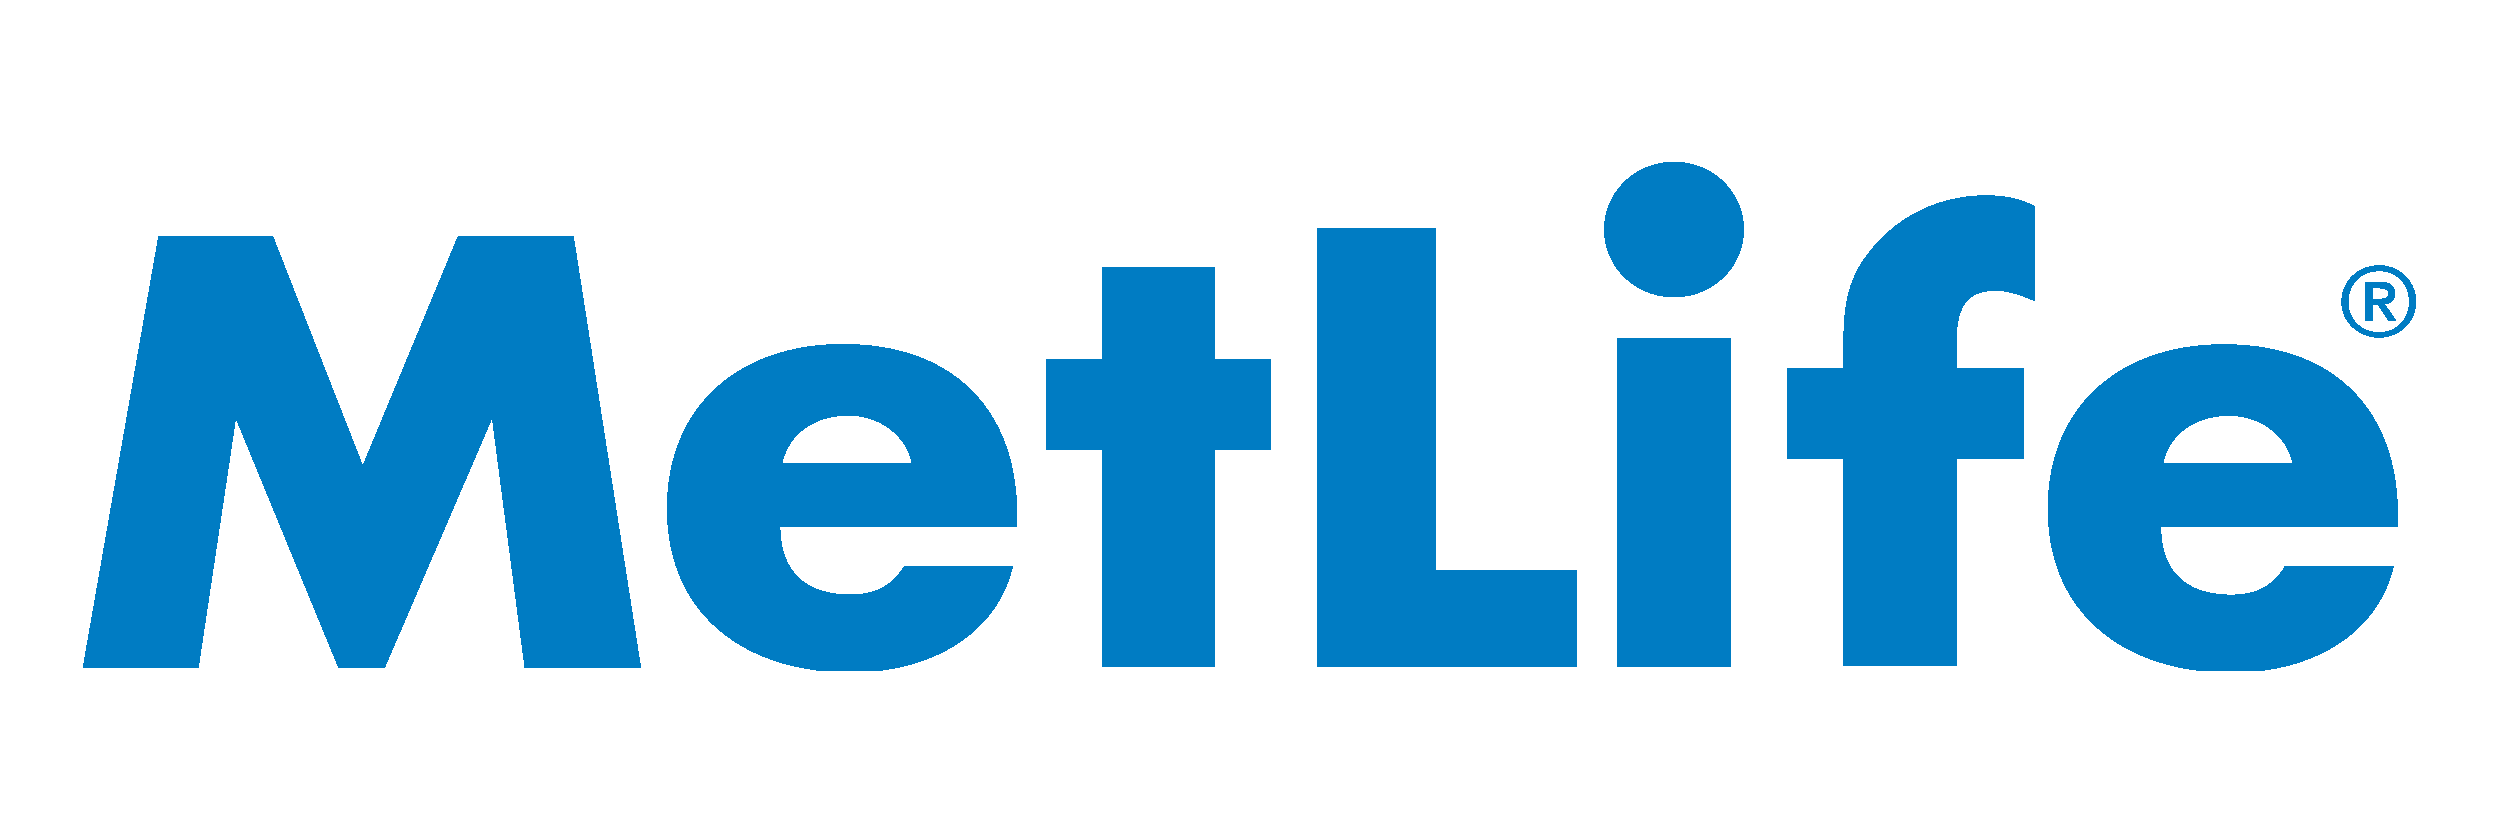 MetLife Logo Wallpaper